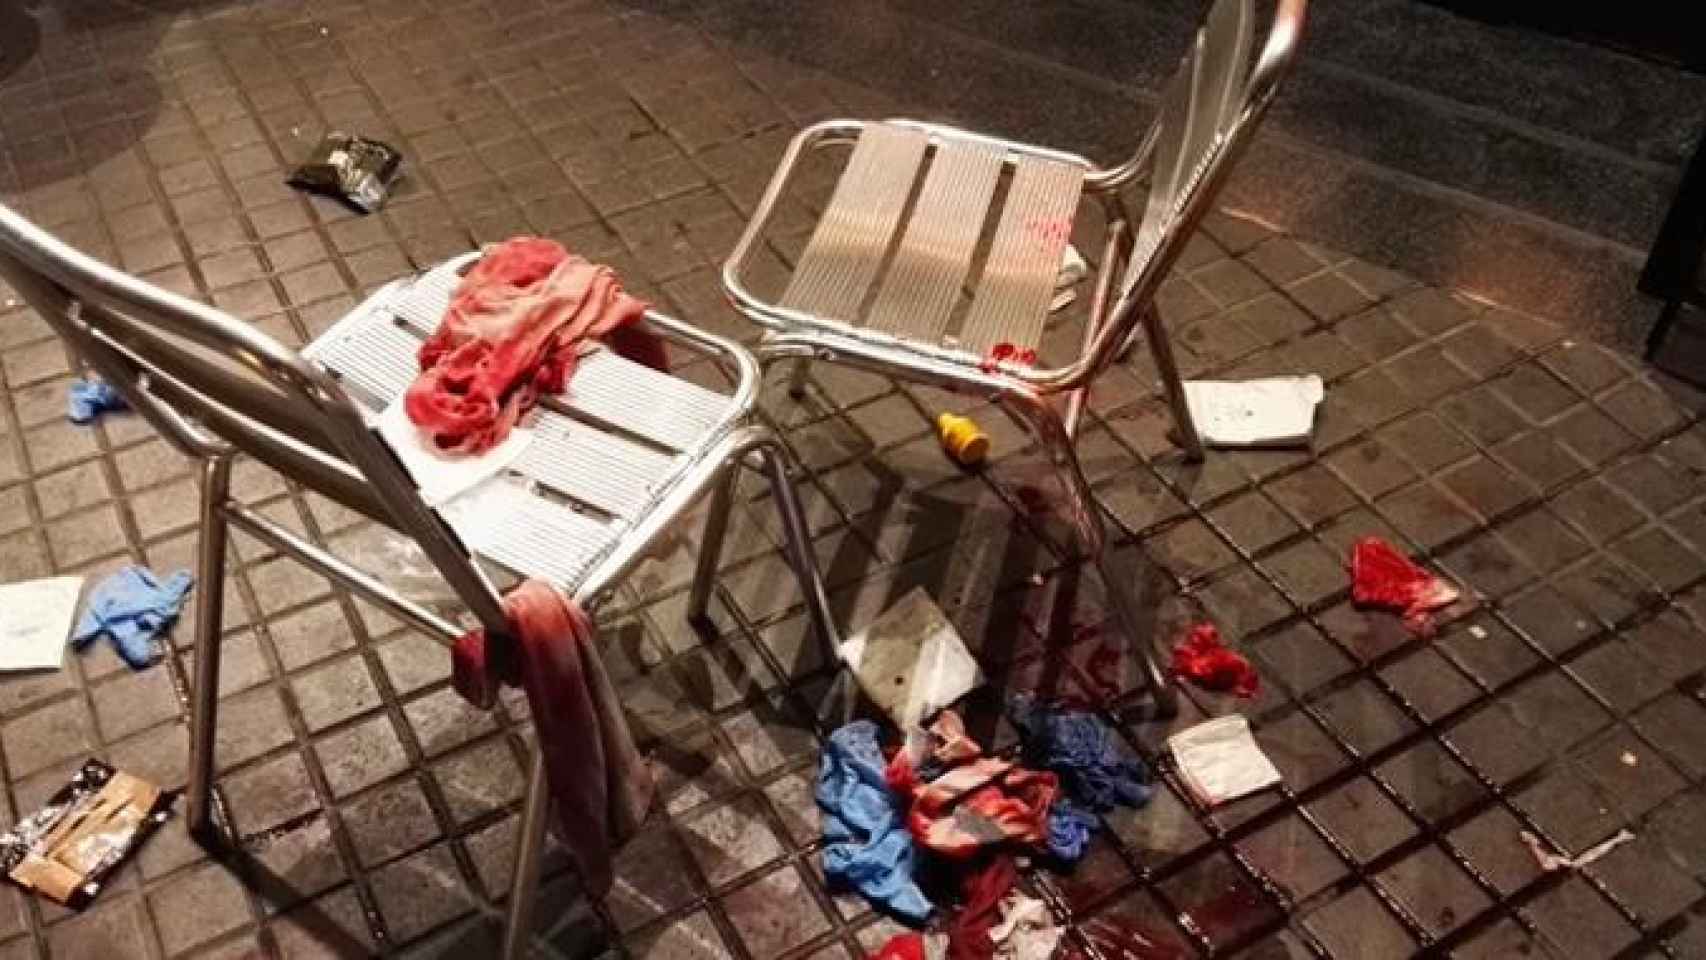 Imagen de la sangre tras la agresión de un mantero a un turista en Barcelona / CG